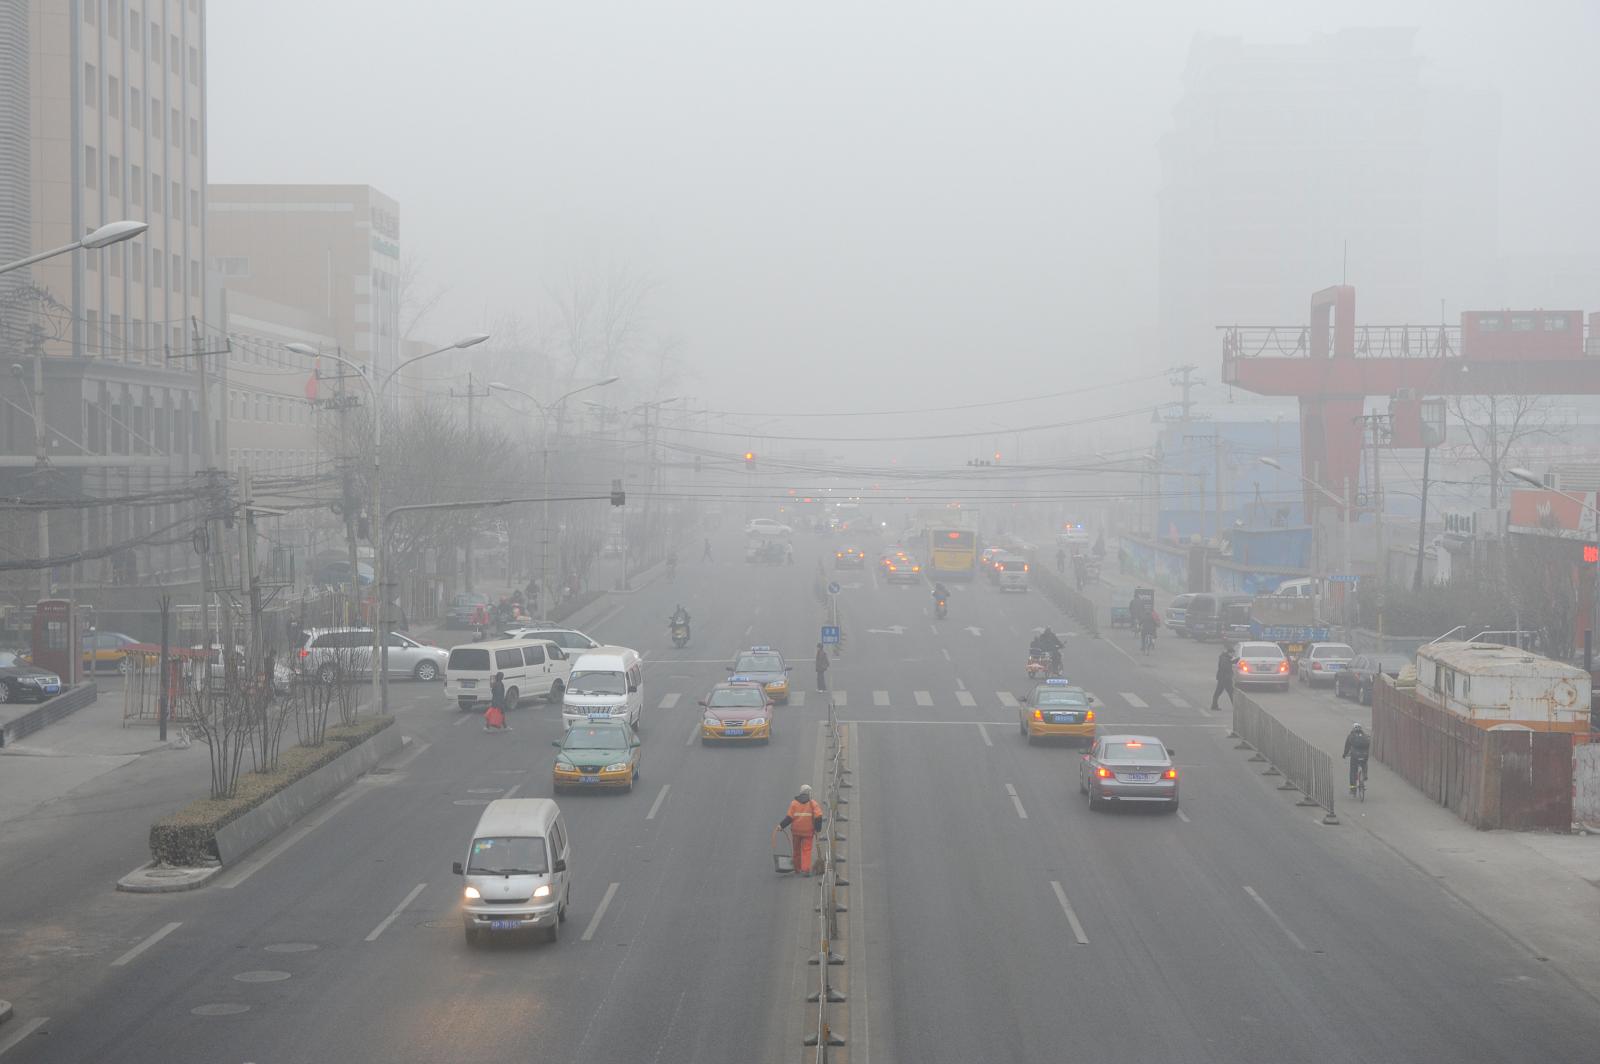 hình ảnh xe cộ, các tòa nhà cao tầng, cảnh thành phố mờ ảo vì khói bụi ô nhiễm